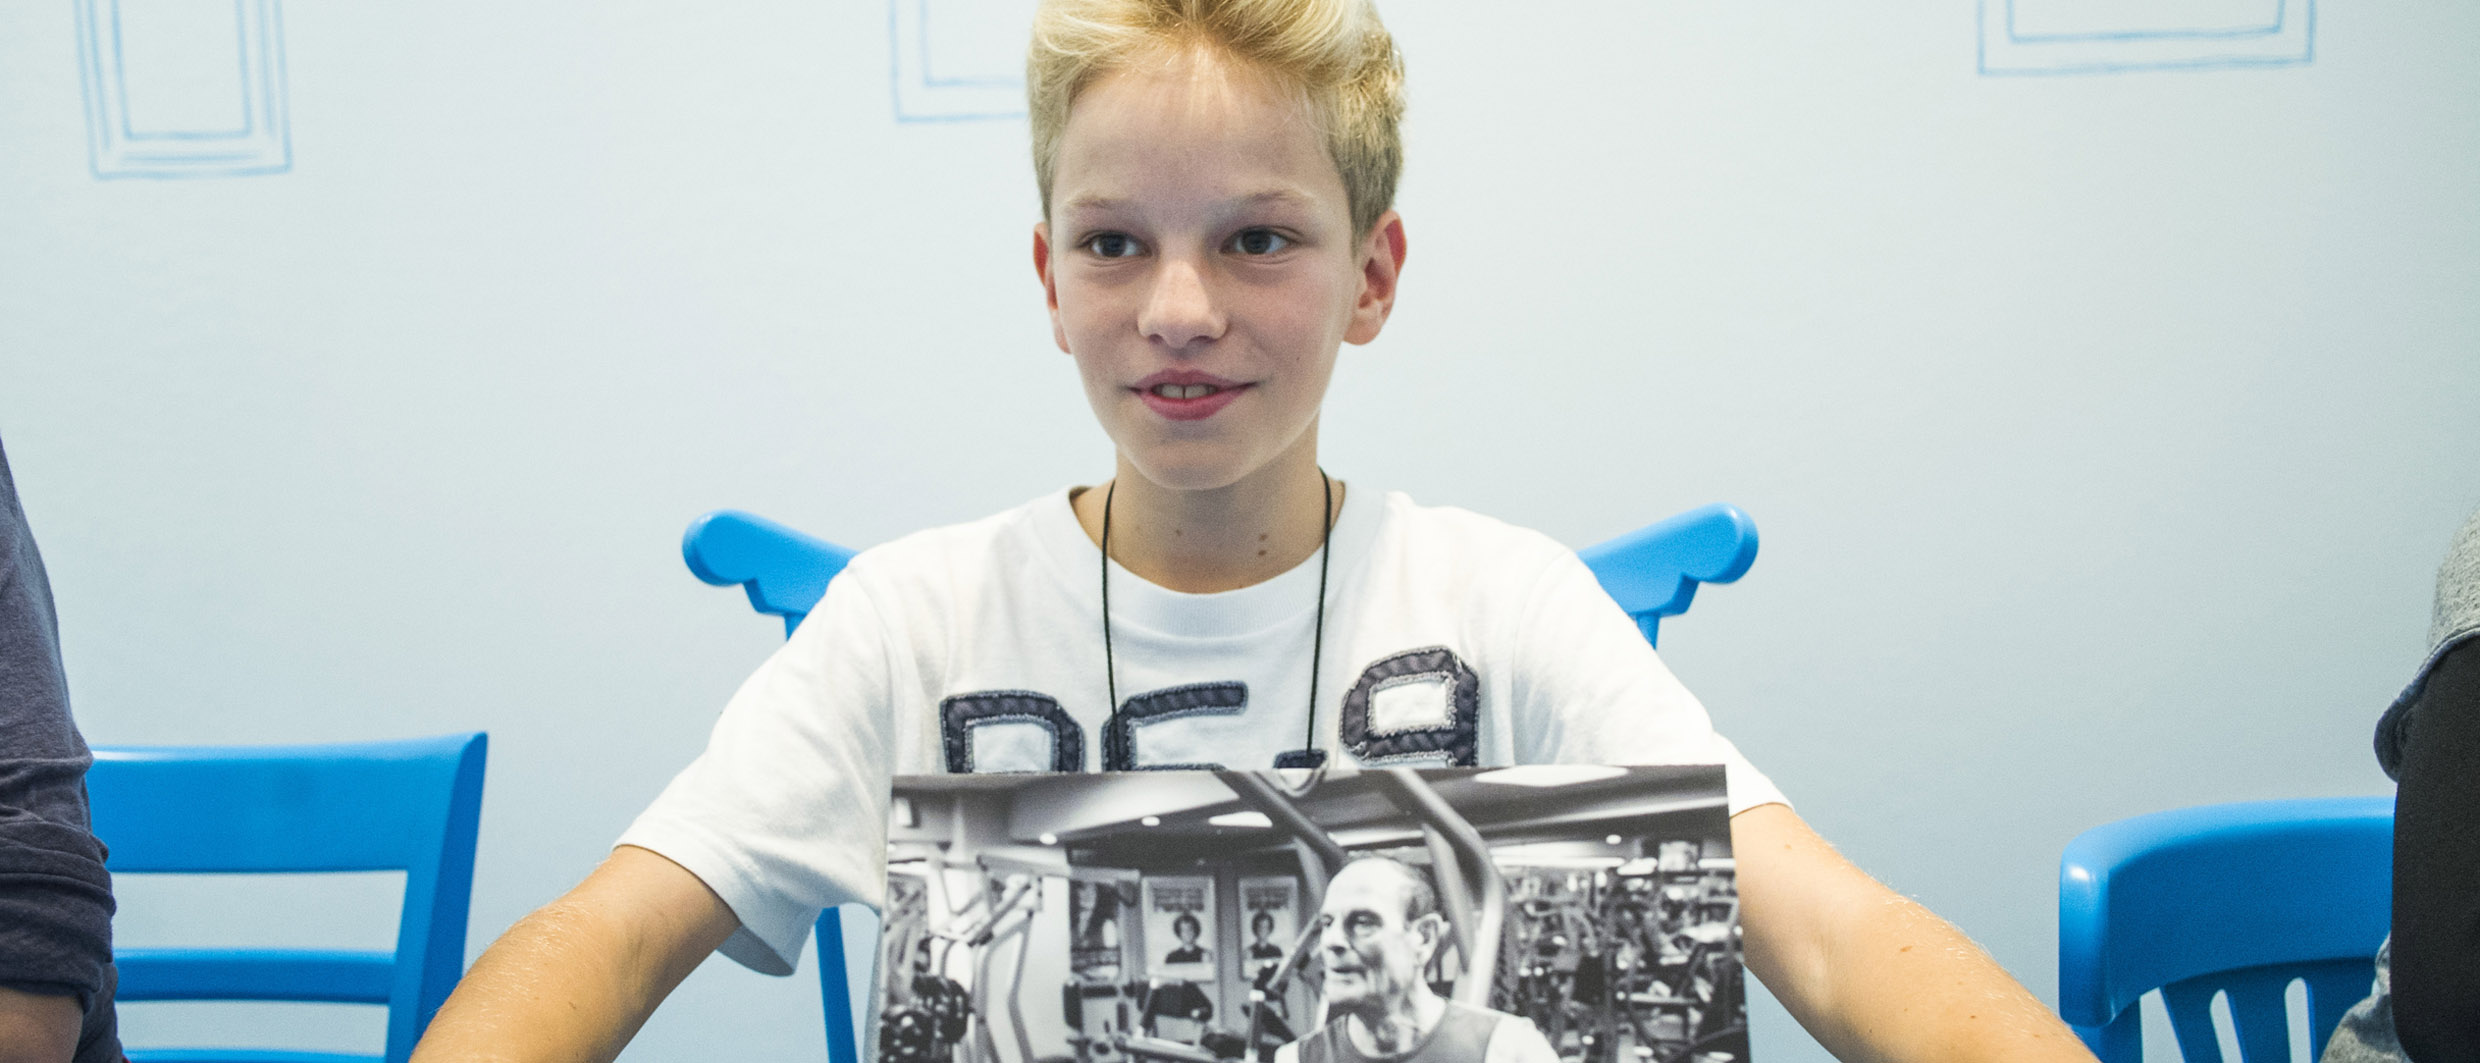 Foto eines Jungen, der im Dialograum der Dialog mit der Zeit-Ausstellung ein Bild zeigt, dass seine Vision eines Lebens im Alter symbolisiert.